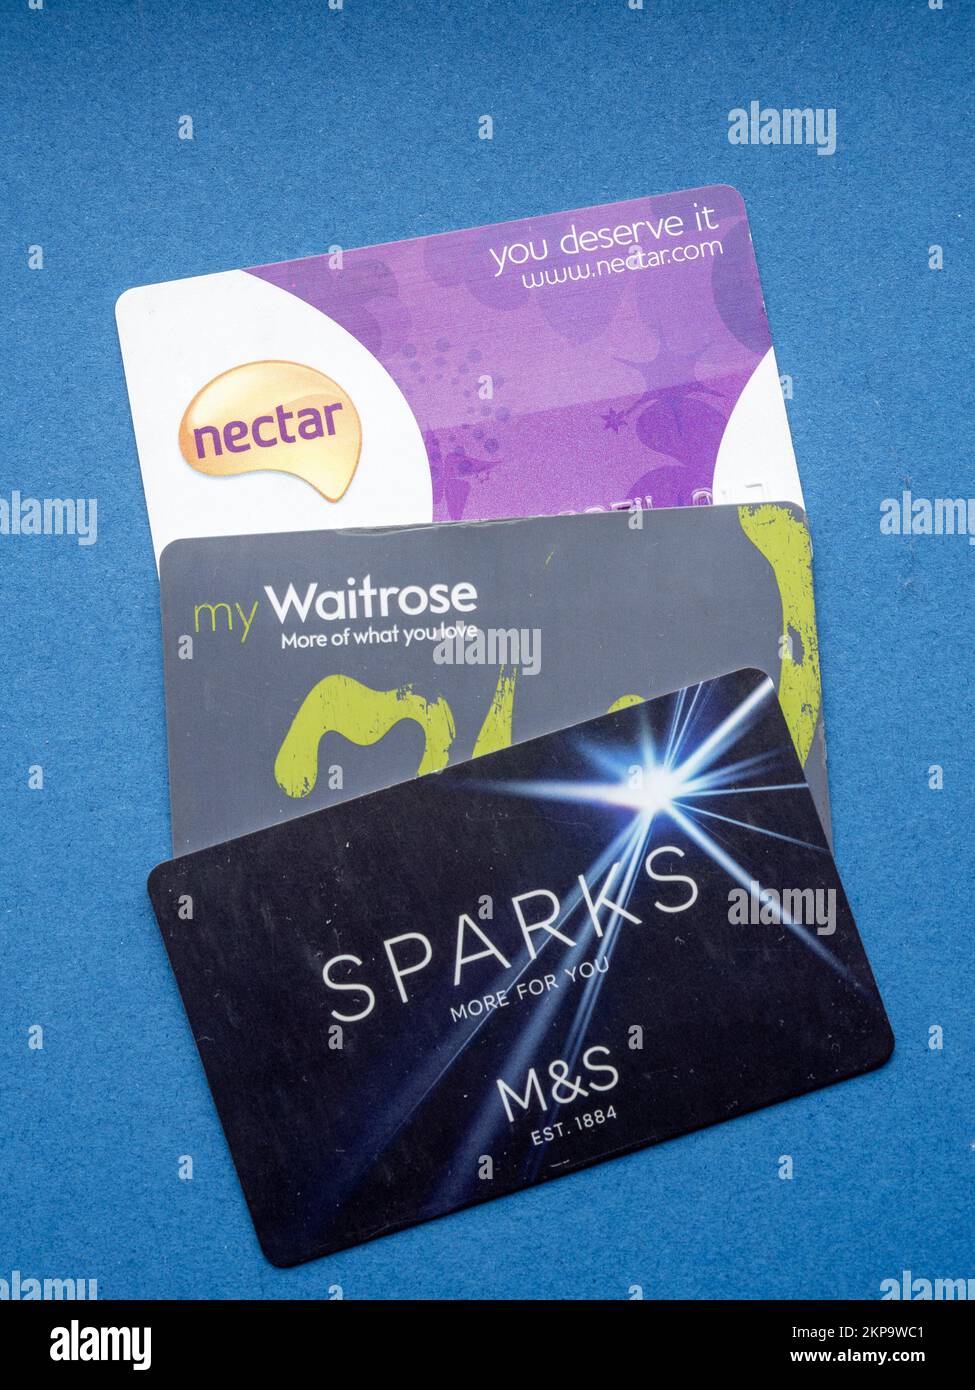 Tre carte fedeltà del negozio - Sparks, Waitrose e Nectar - su sfondo blu, Regno Unito Foto Stock